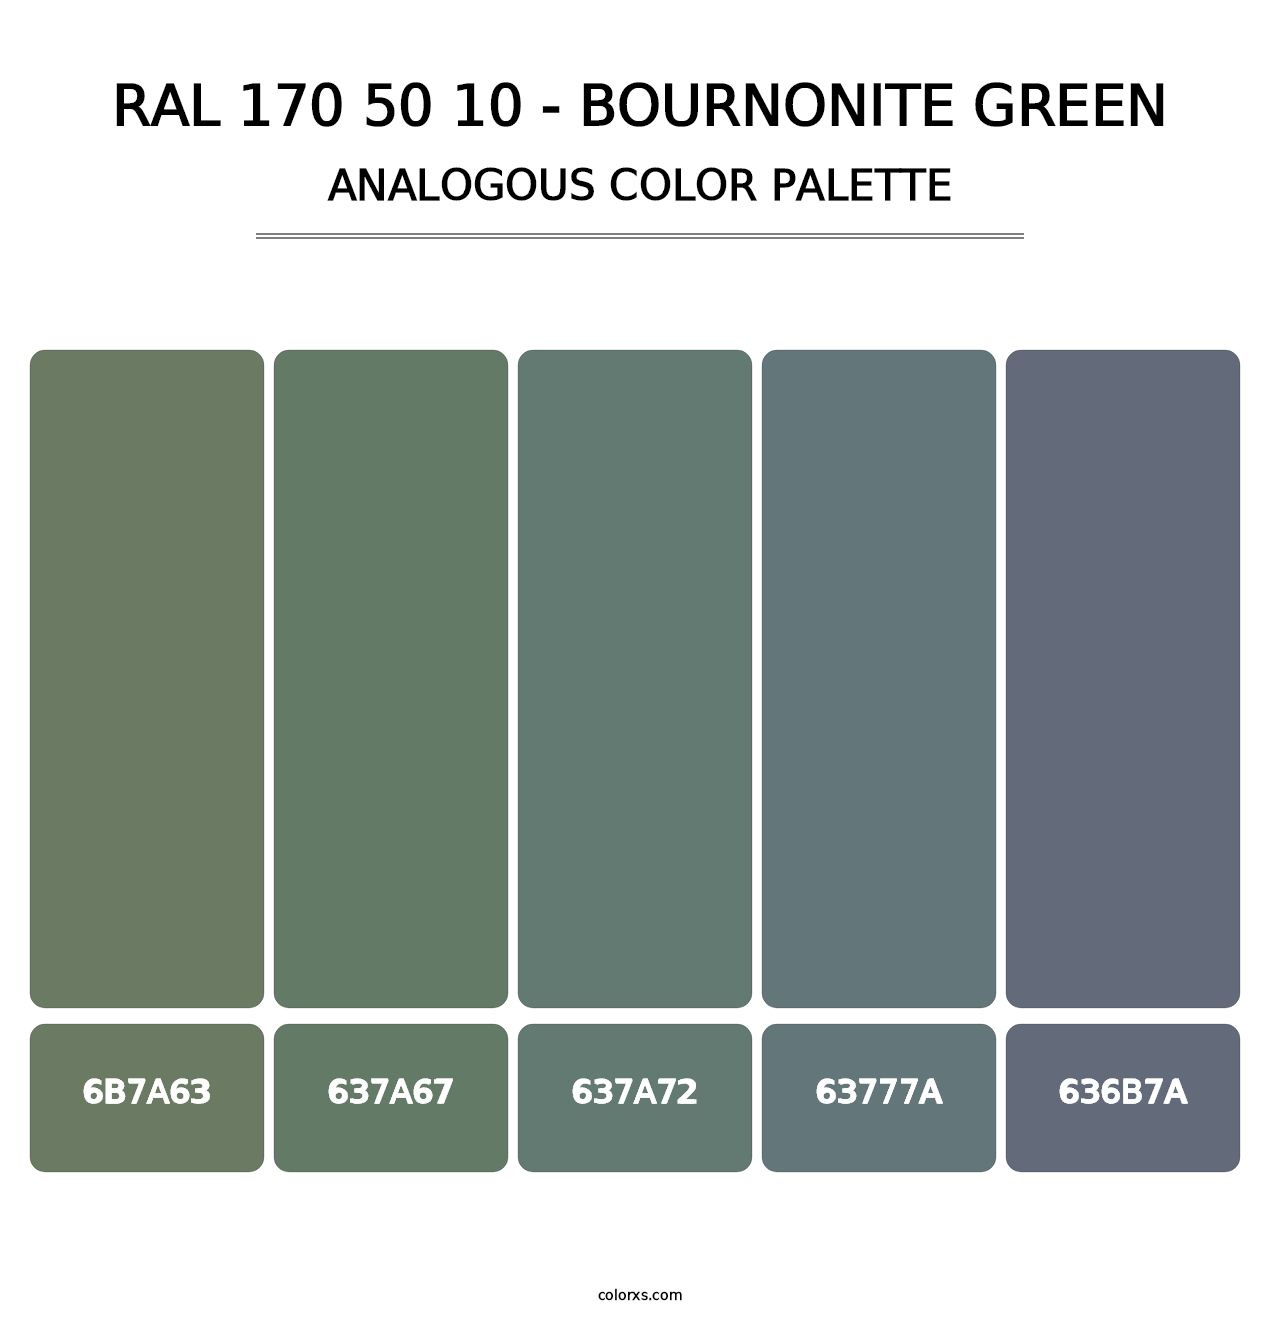 RAL 170 50 10 - Bournonite Green - Analogous Color Palette